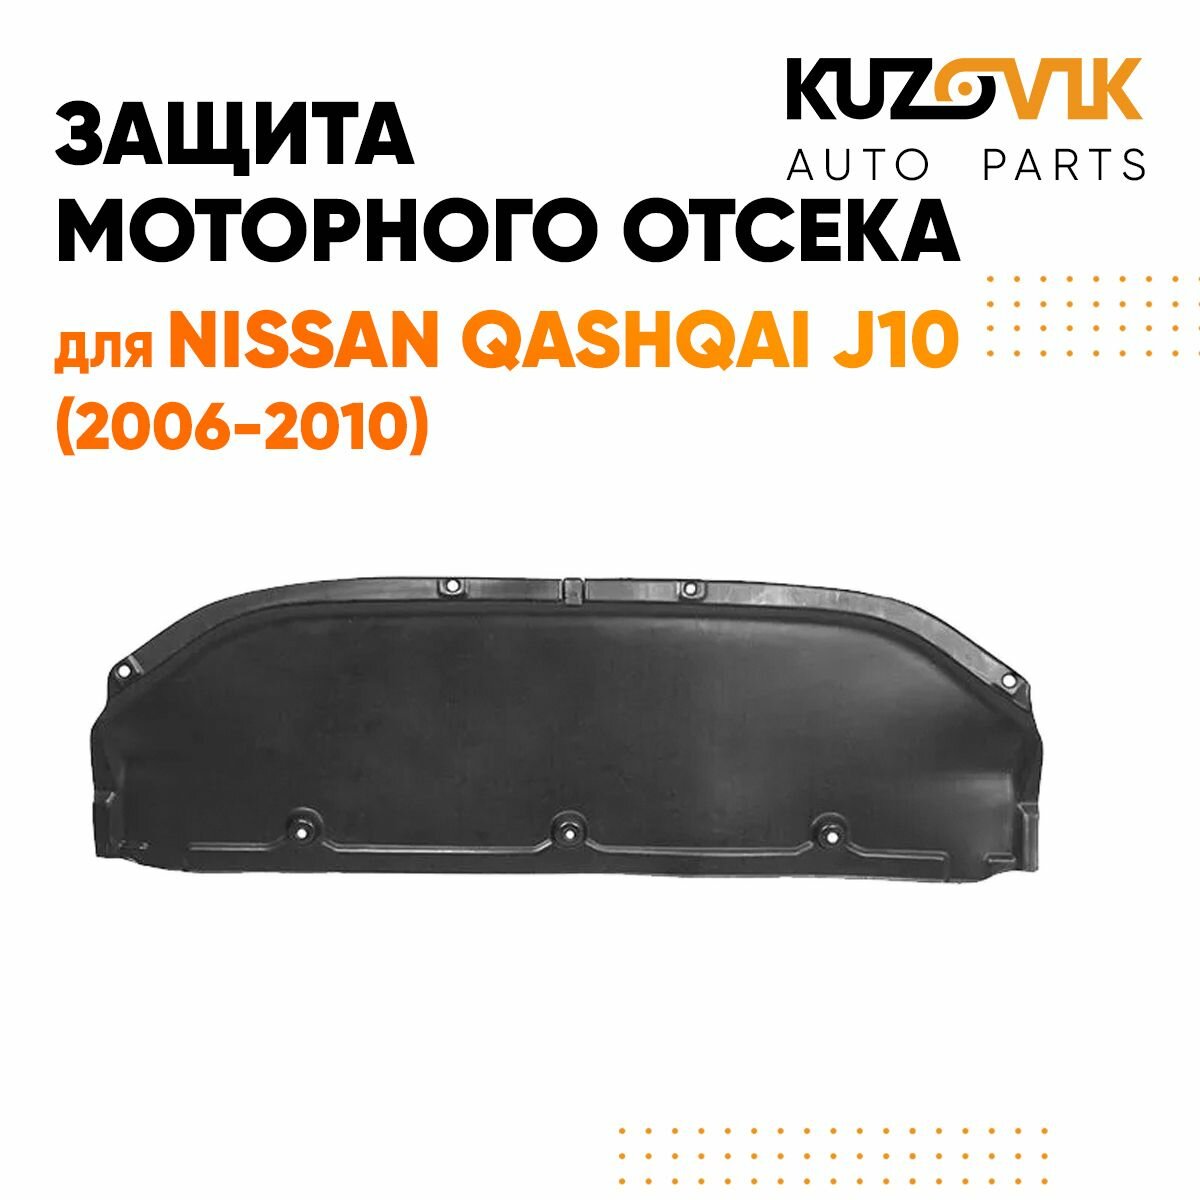 Защита пыльник двигателя для Ниссан Кашкай Nissan Qashqai J10 (2006-2010) пластик